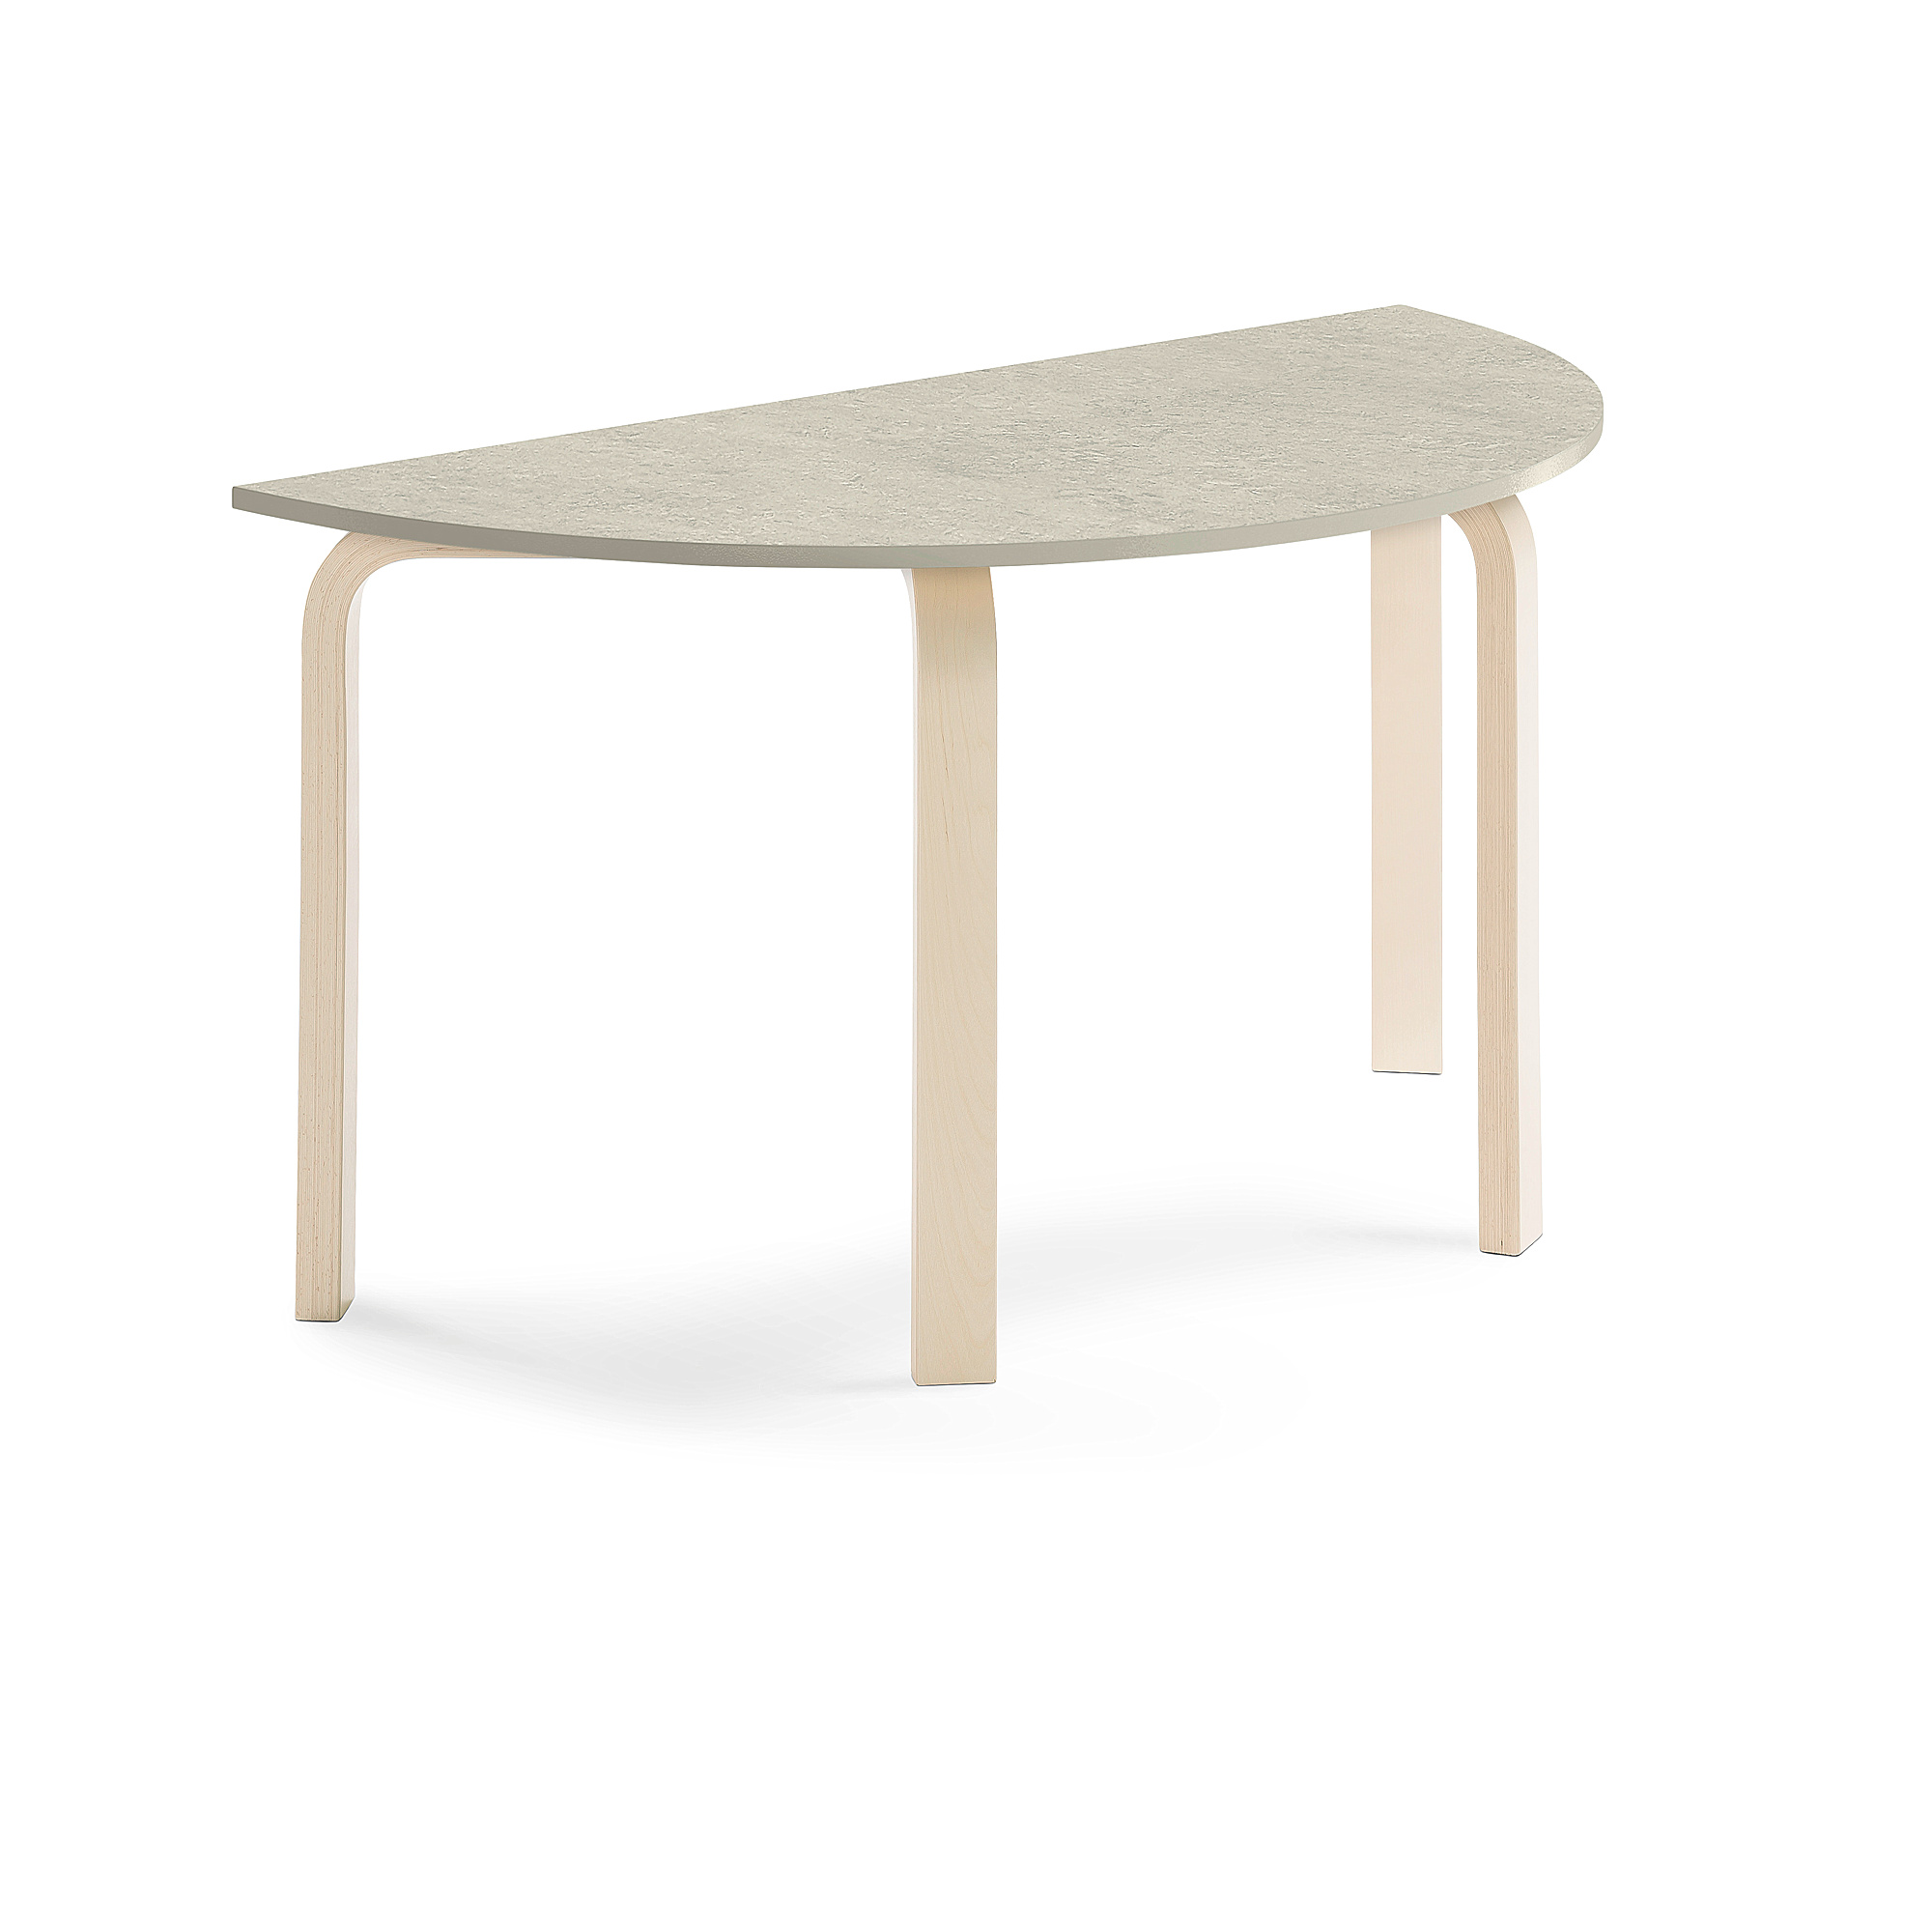 Stůl ELTON, půlkruh, 1200x600x640 mm, bříza, akustické linoleum, šedá